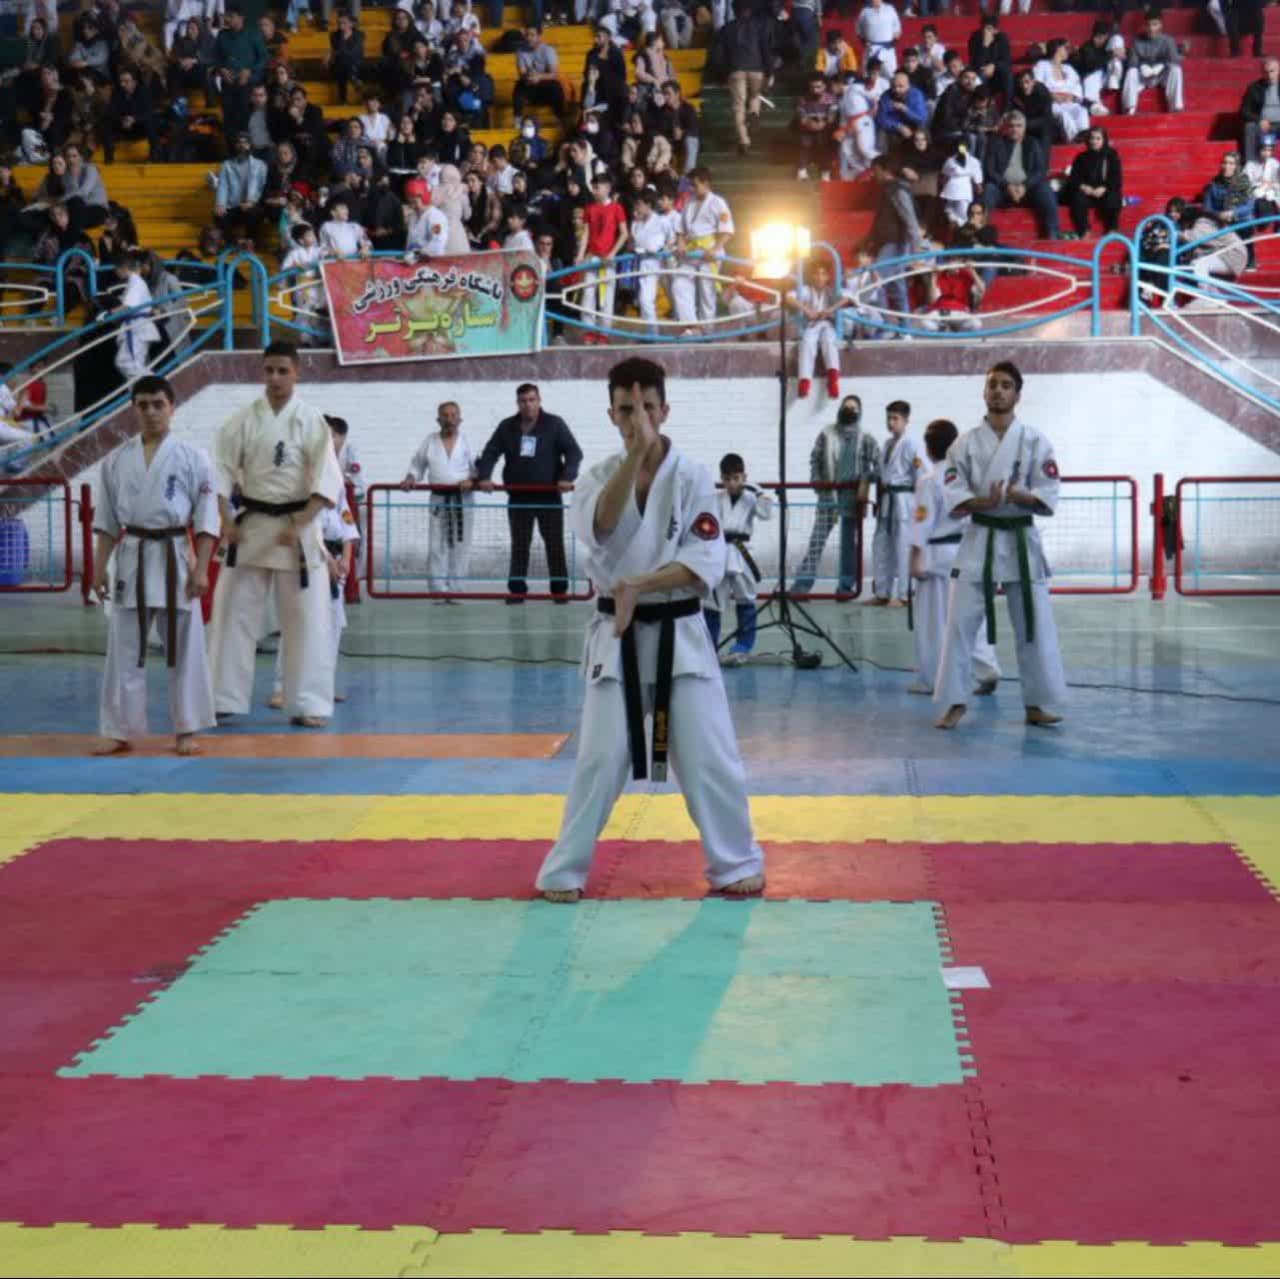 مسابقات کاراته آزاد بسیج گیلان در رشت برگزار شد + تصاویر